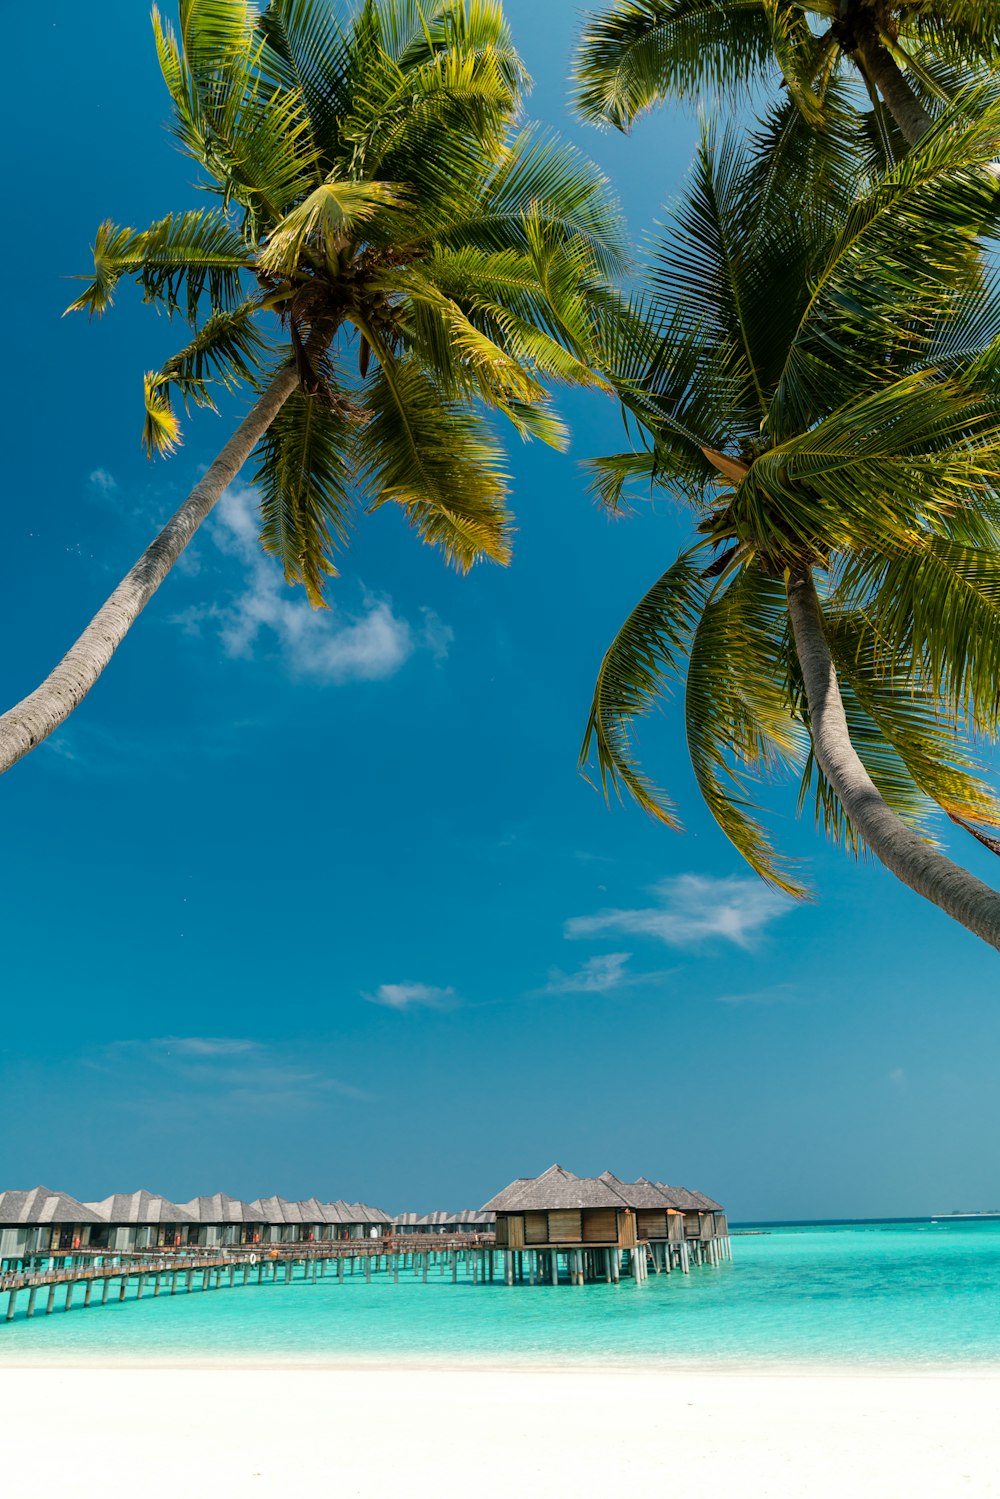 해안에 있는 코코넛 나무의 로우 앵글 사진